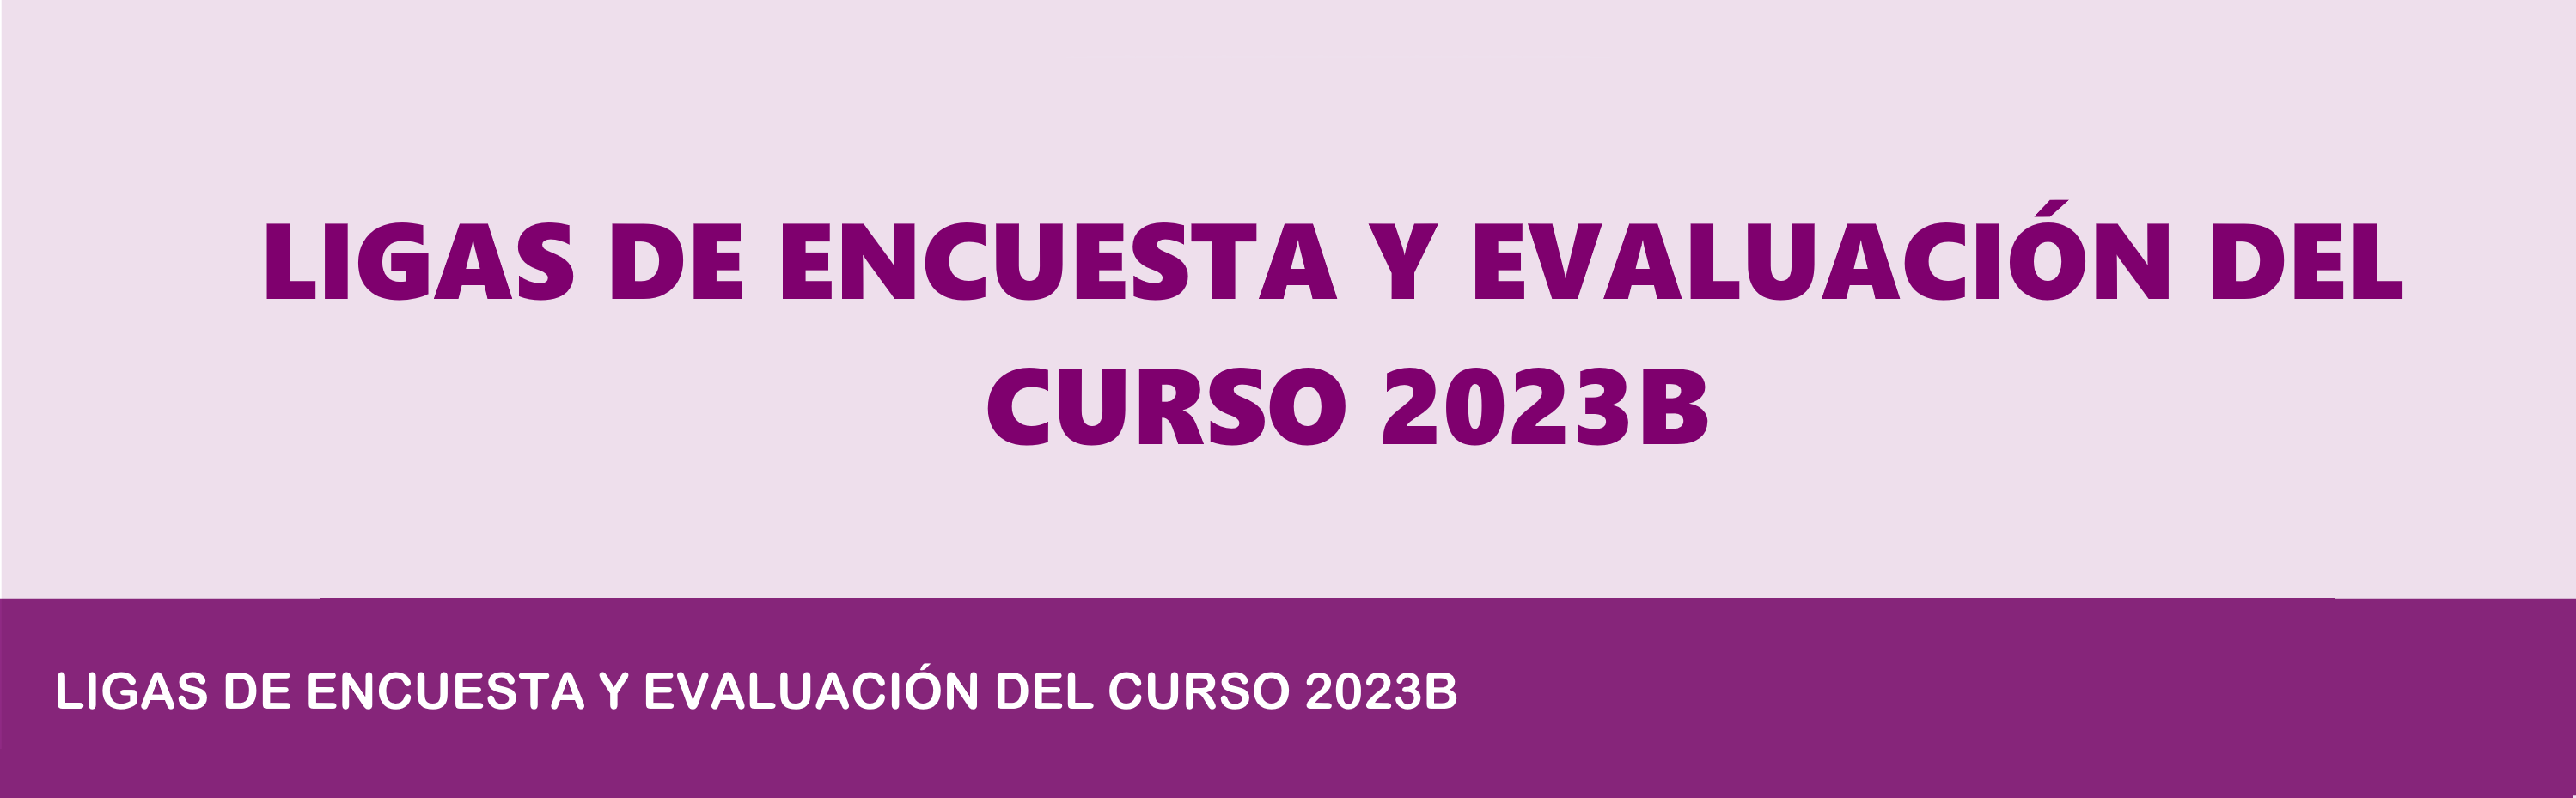 LIGAS DE ENCUESTA Y EVALUACIÓN DEL CURSO 2023B.